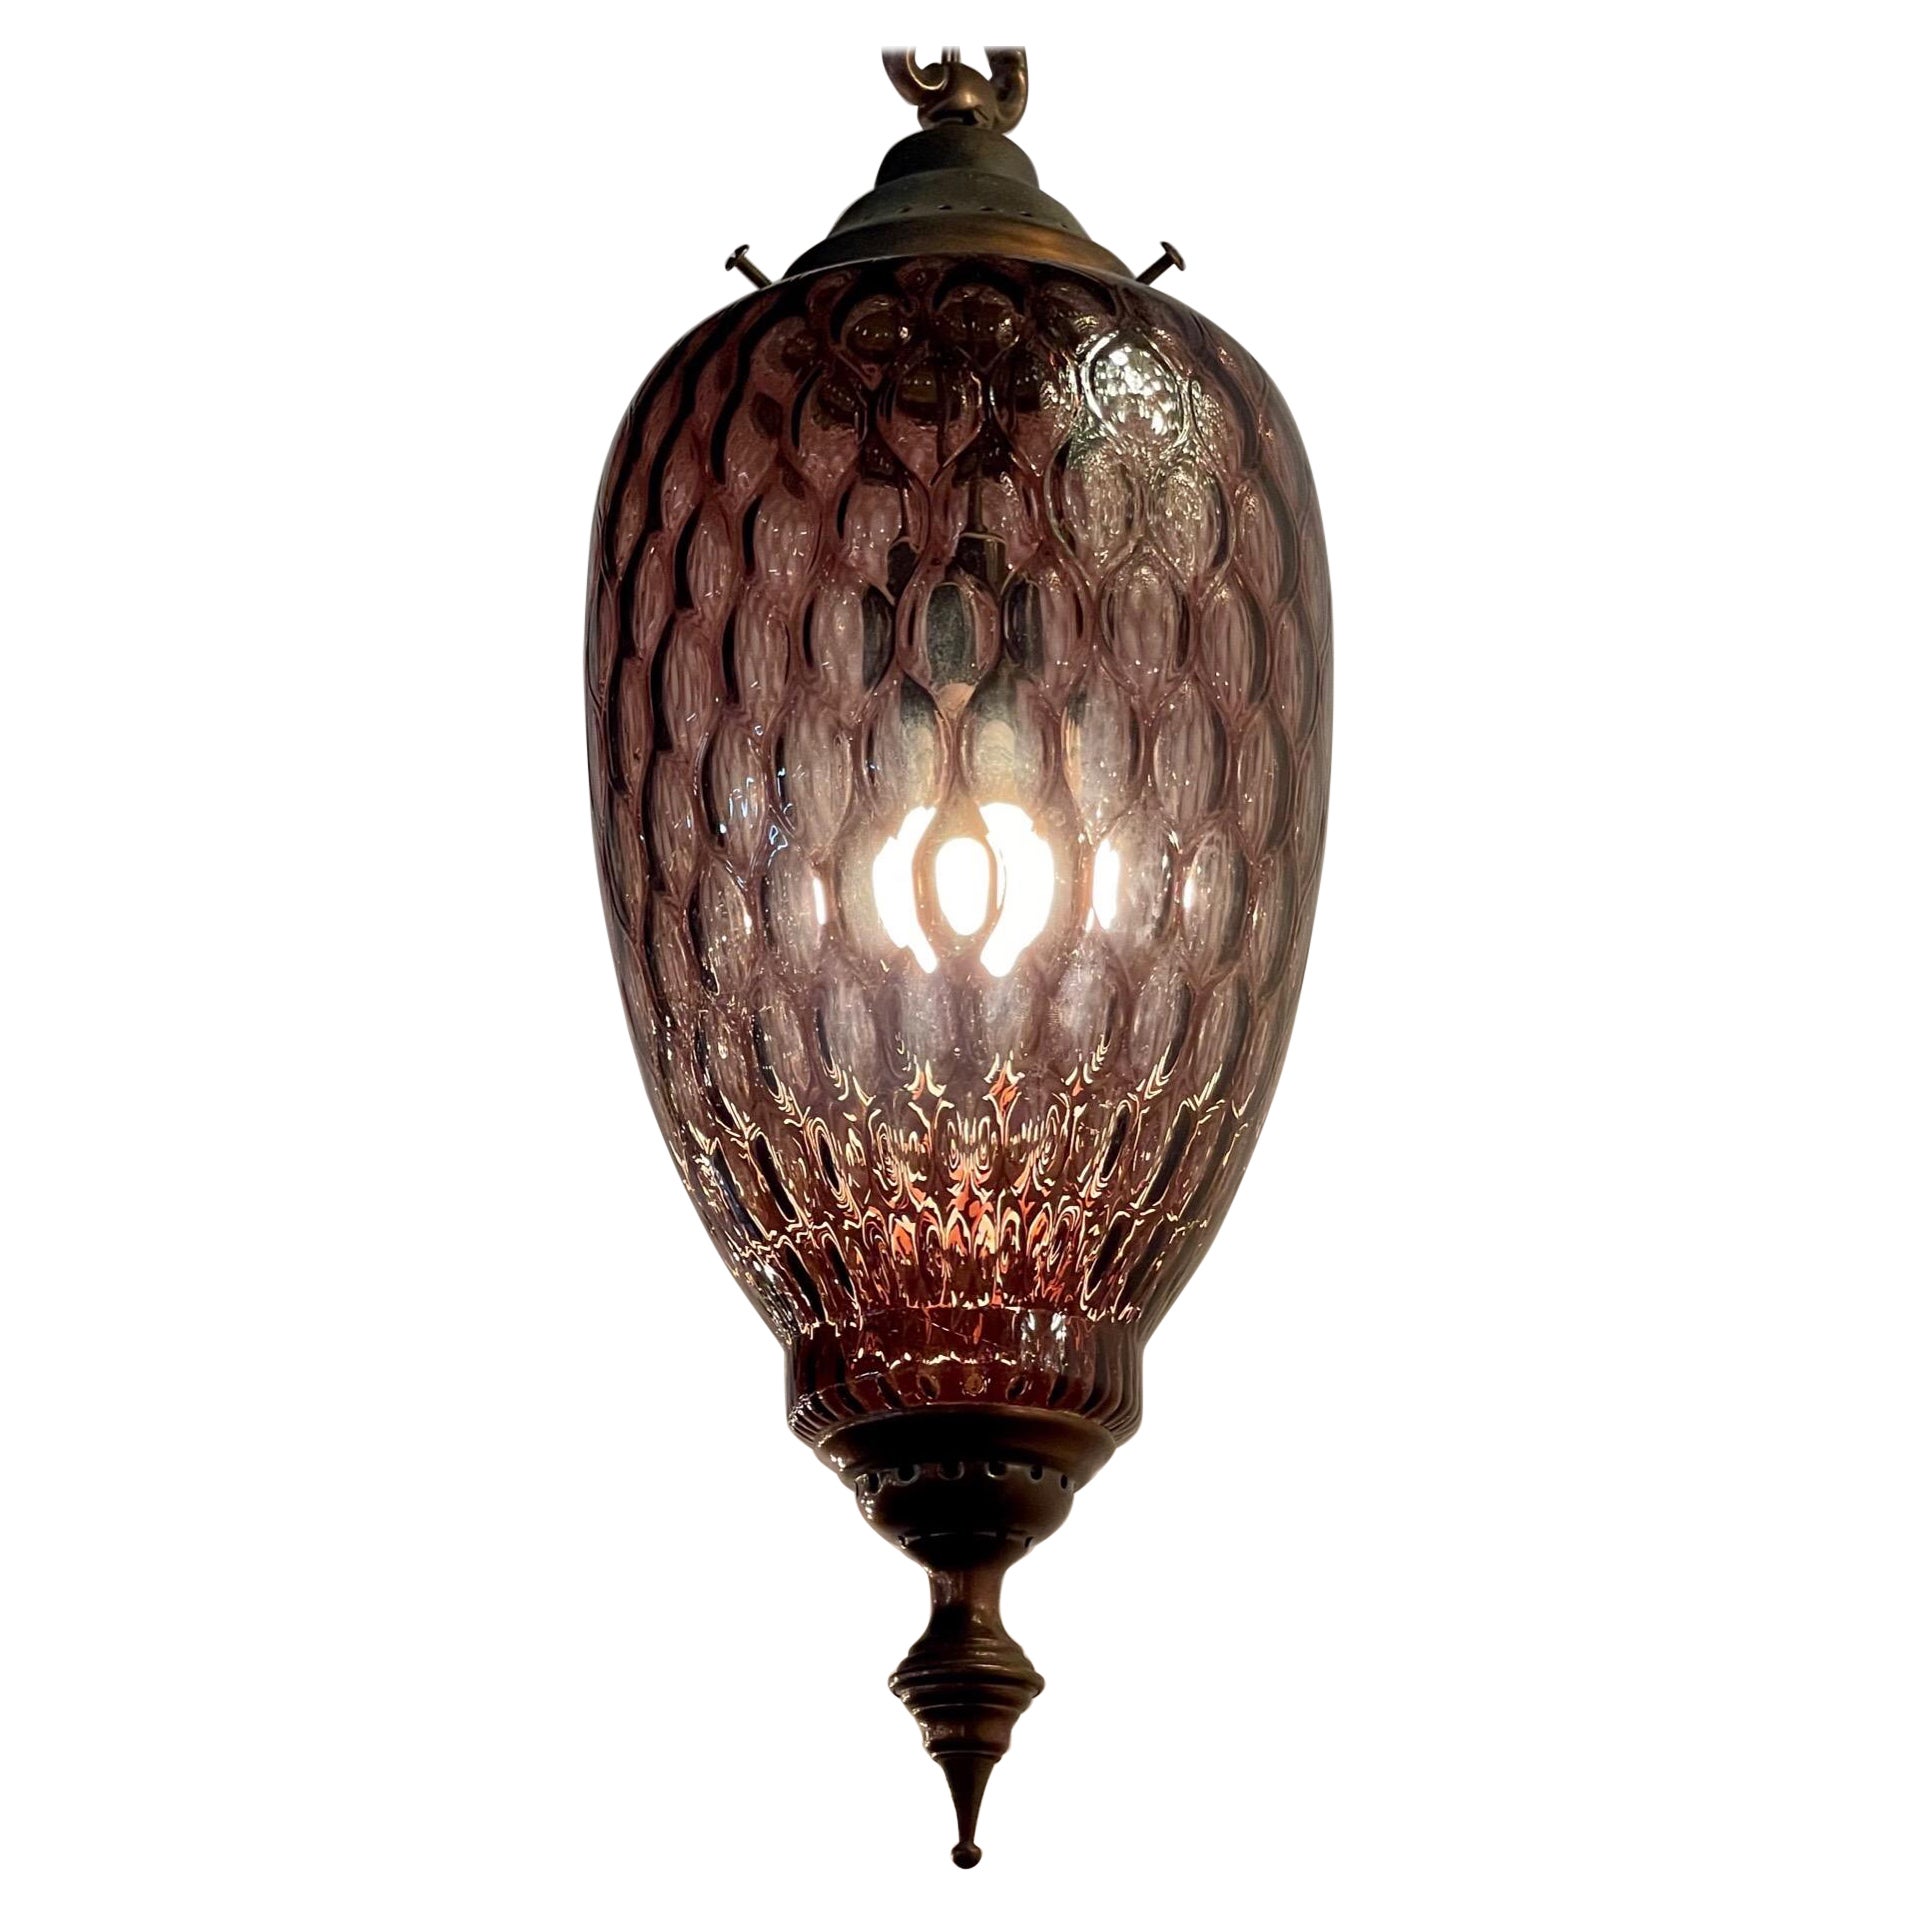 Vintage Lavender Colored Murano Glass Lantern